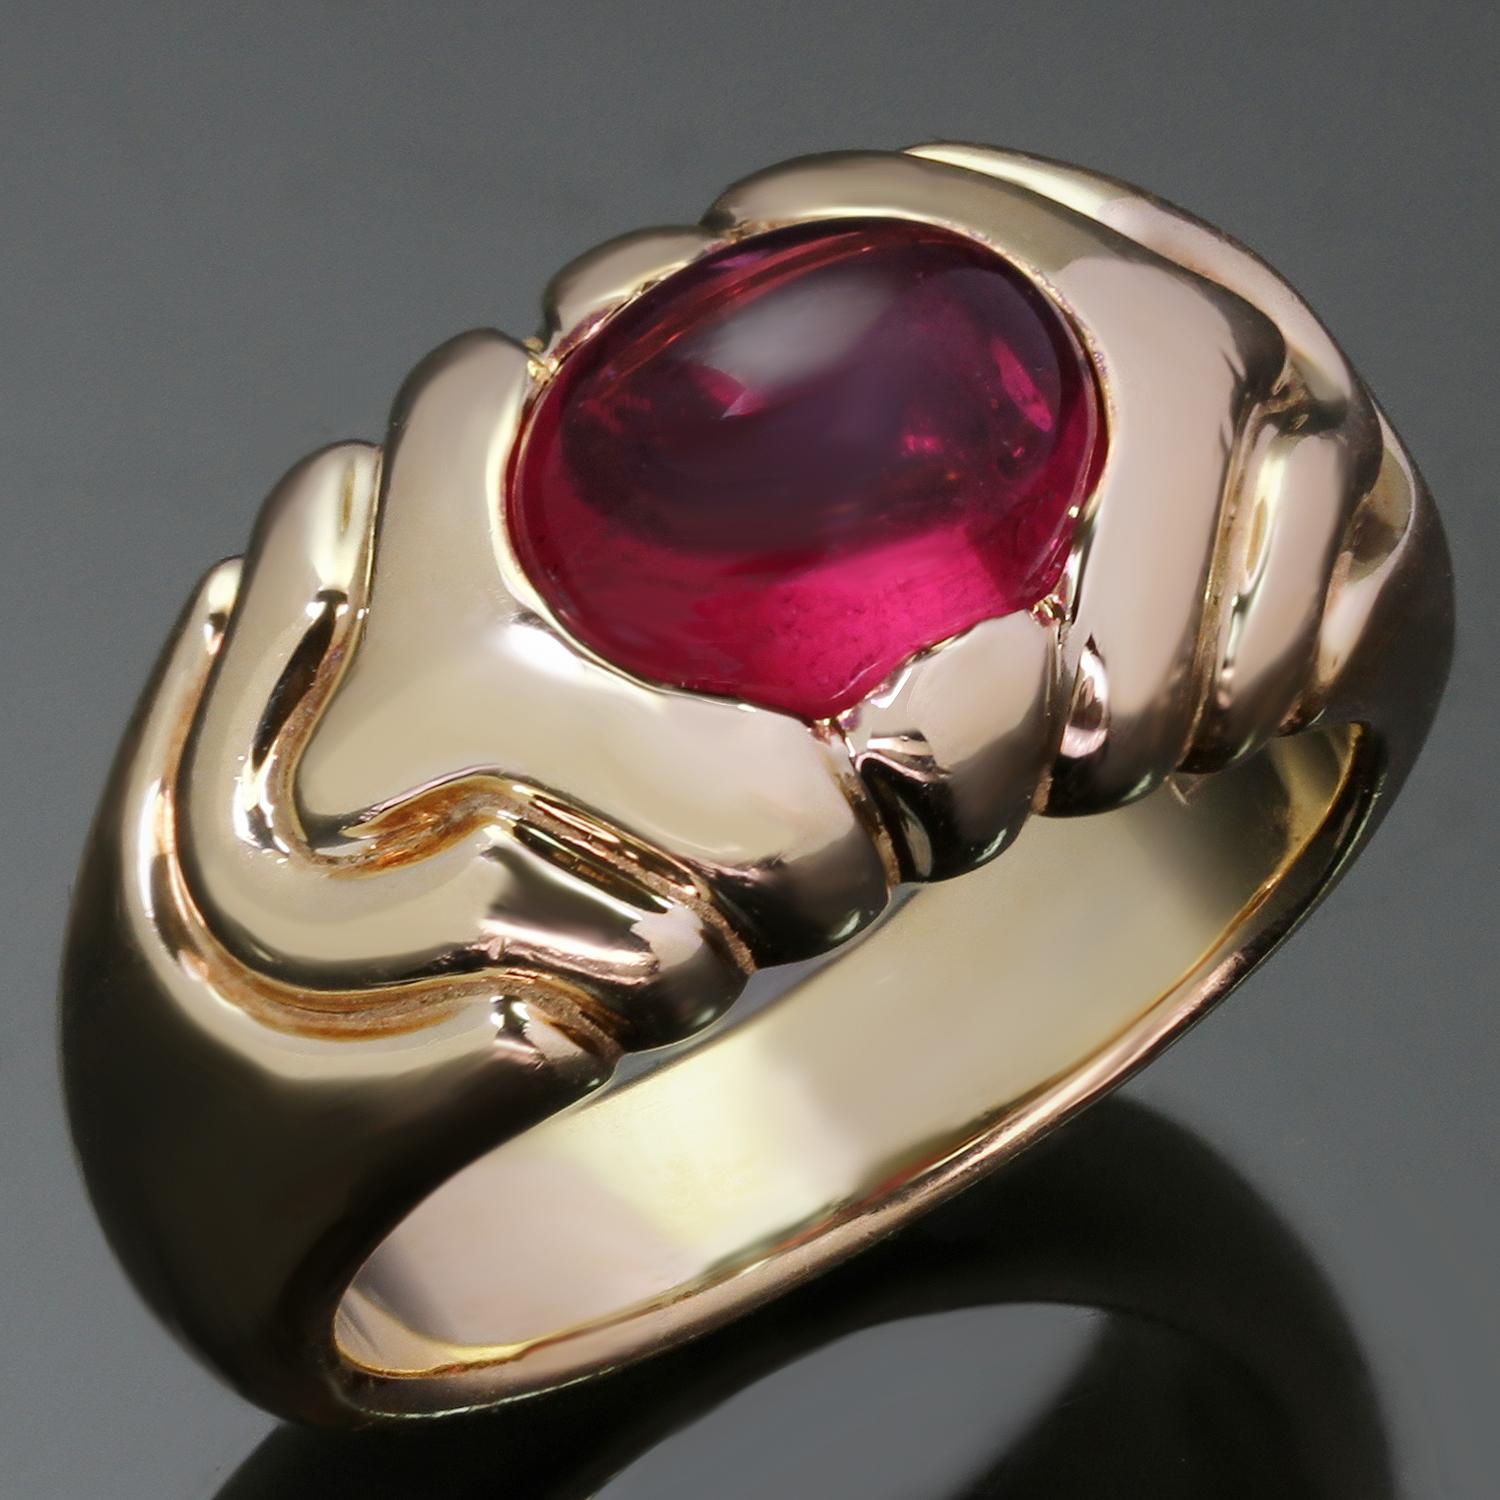 Dieser wunderschöne Ring von Bvlgari zeichnet sich durch ein geometrisches Design aus, das aus 18 Karat Gelbgold gefertigt und mit einem ovalen 7,0 x 9,0 mm großen rosa Turmalin-Cabochon besetzt ist. Hergestellt in Italien in den 1990er Jahren.